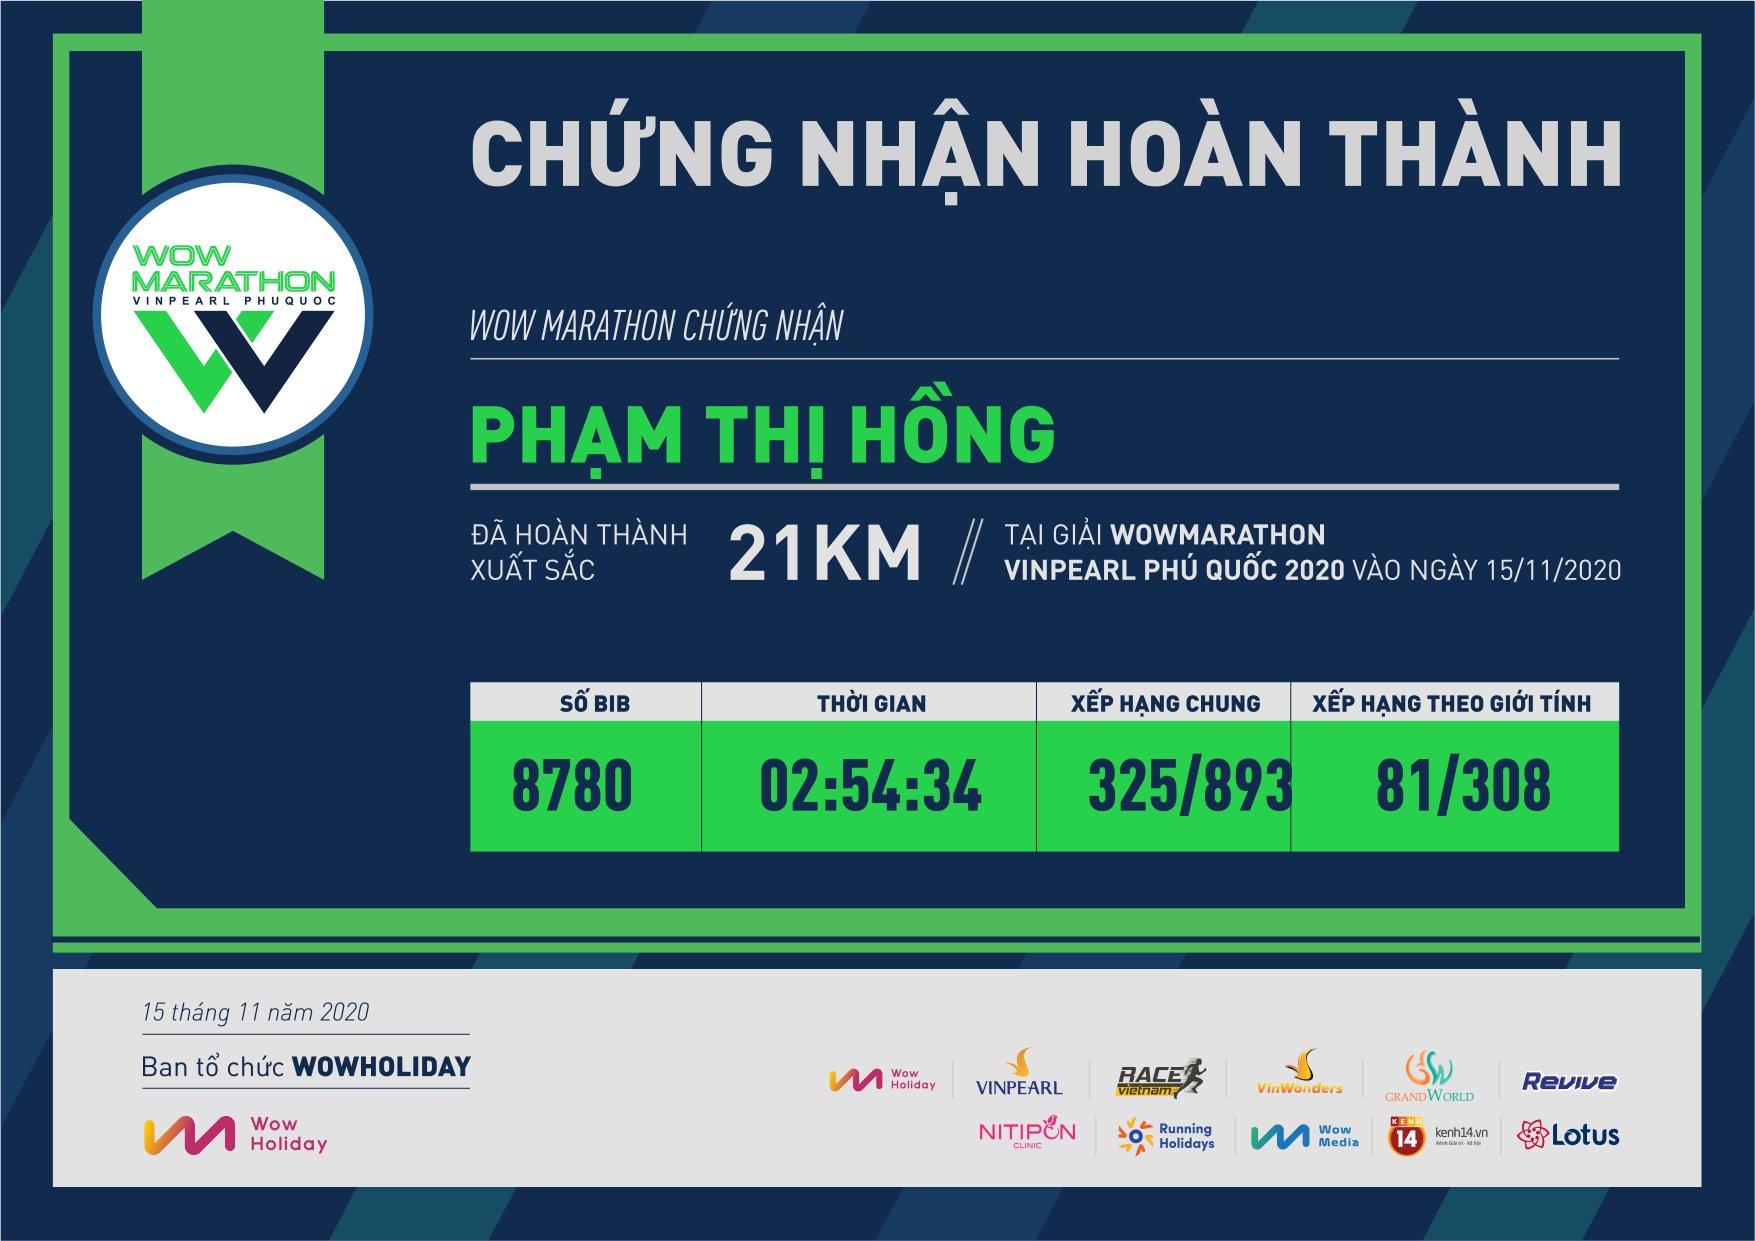 8780 - Phạm Thị Hồng